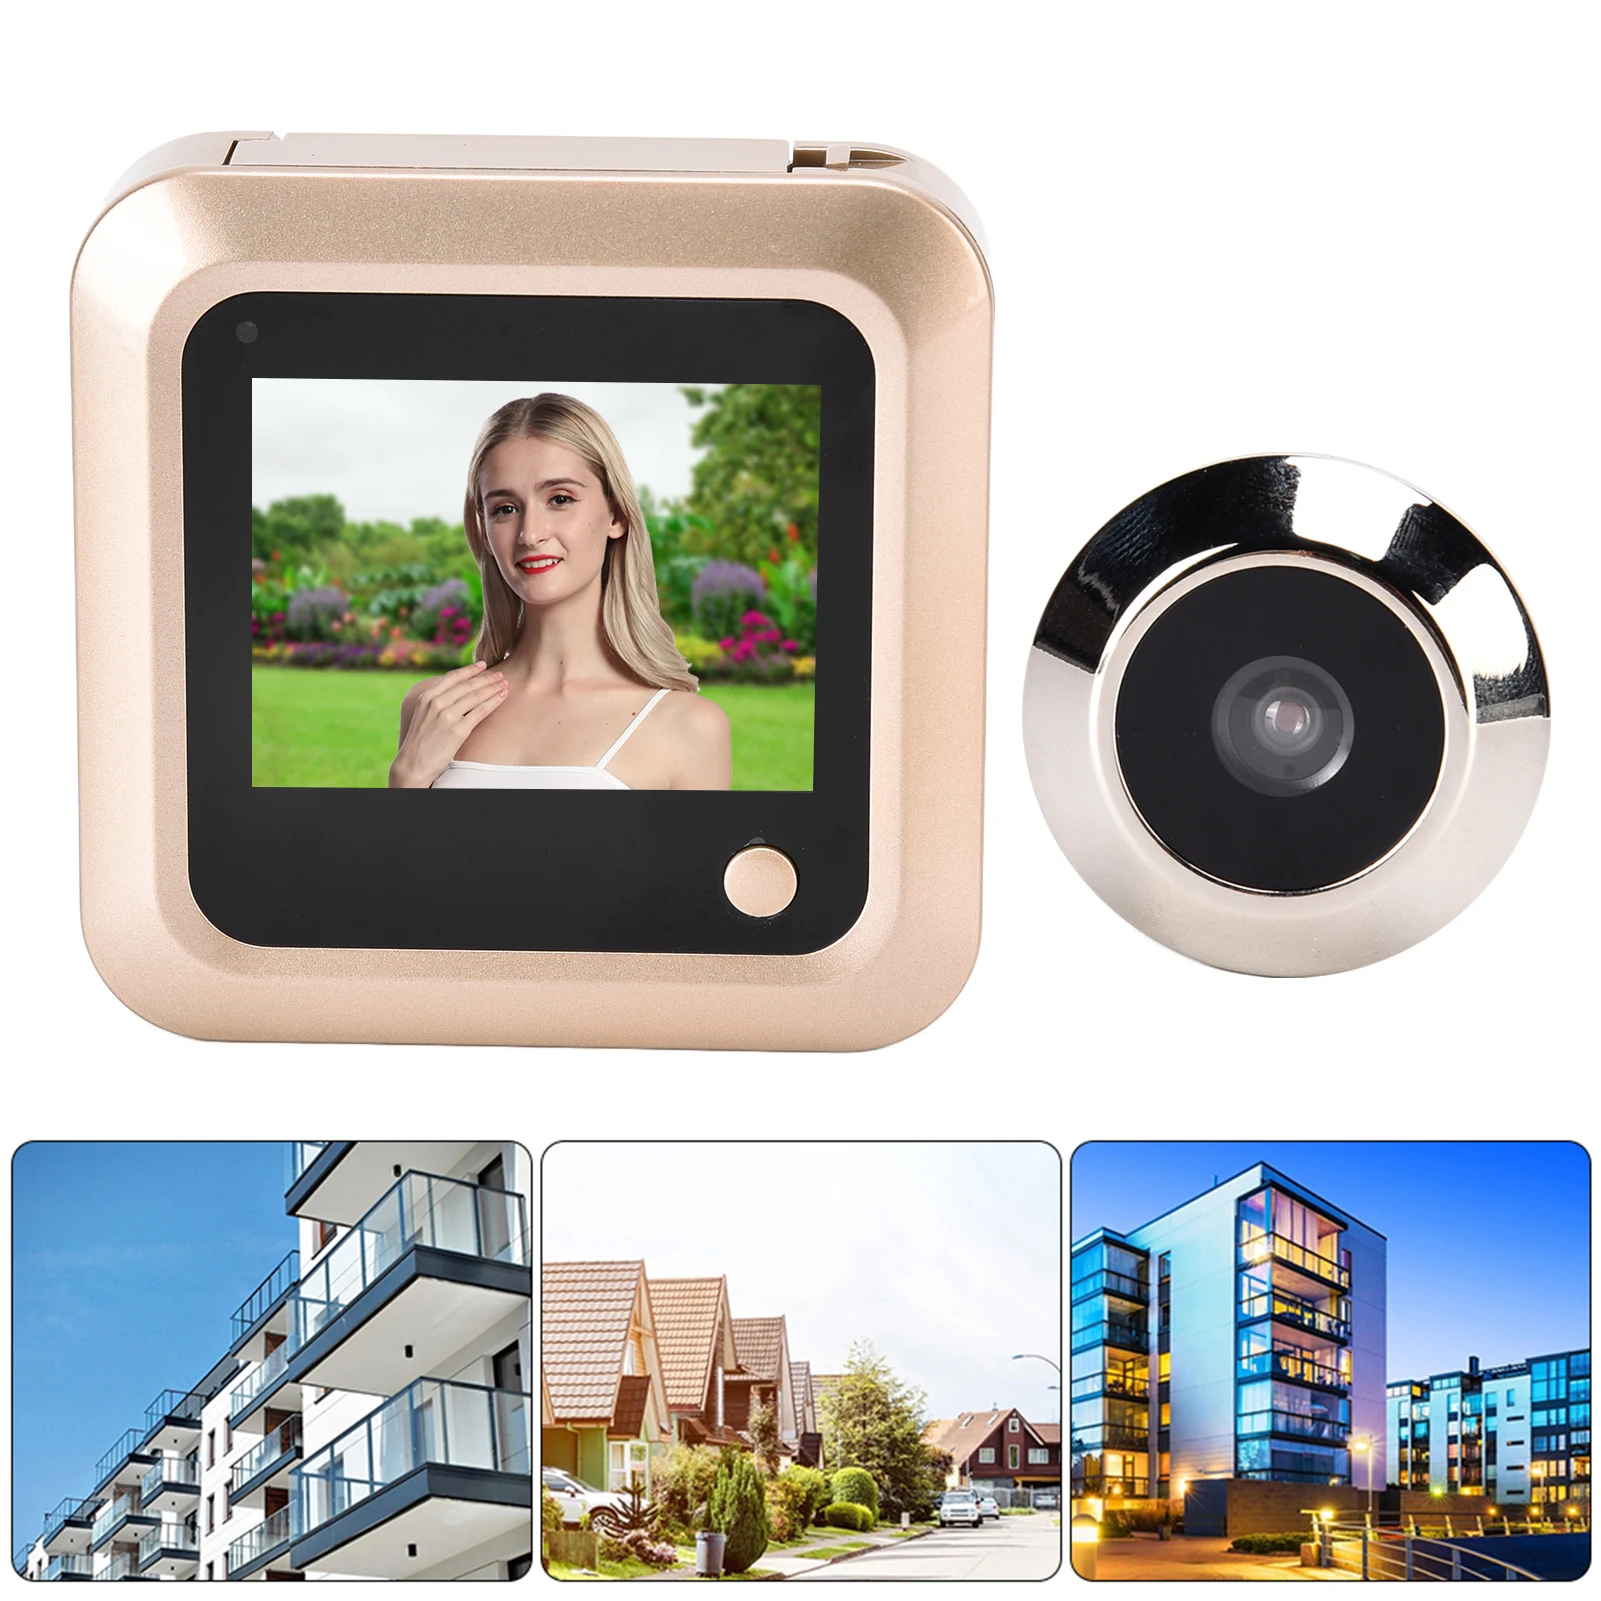 Цифровая дверная камера-шпионка с ЖК-экраном 2,4 дюйма, цветным дисплеем, углом обзора 145 градусов, разрешением 240*320 и наружным звонком.